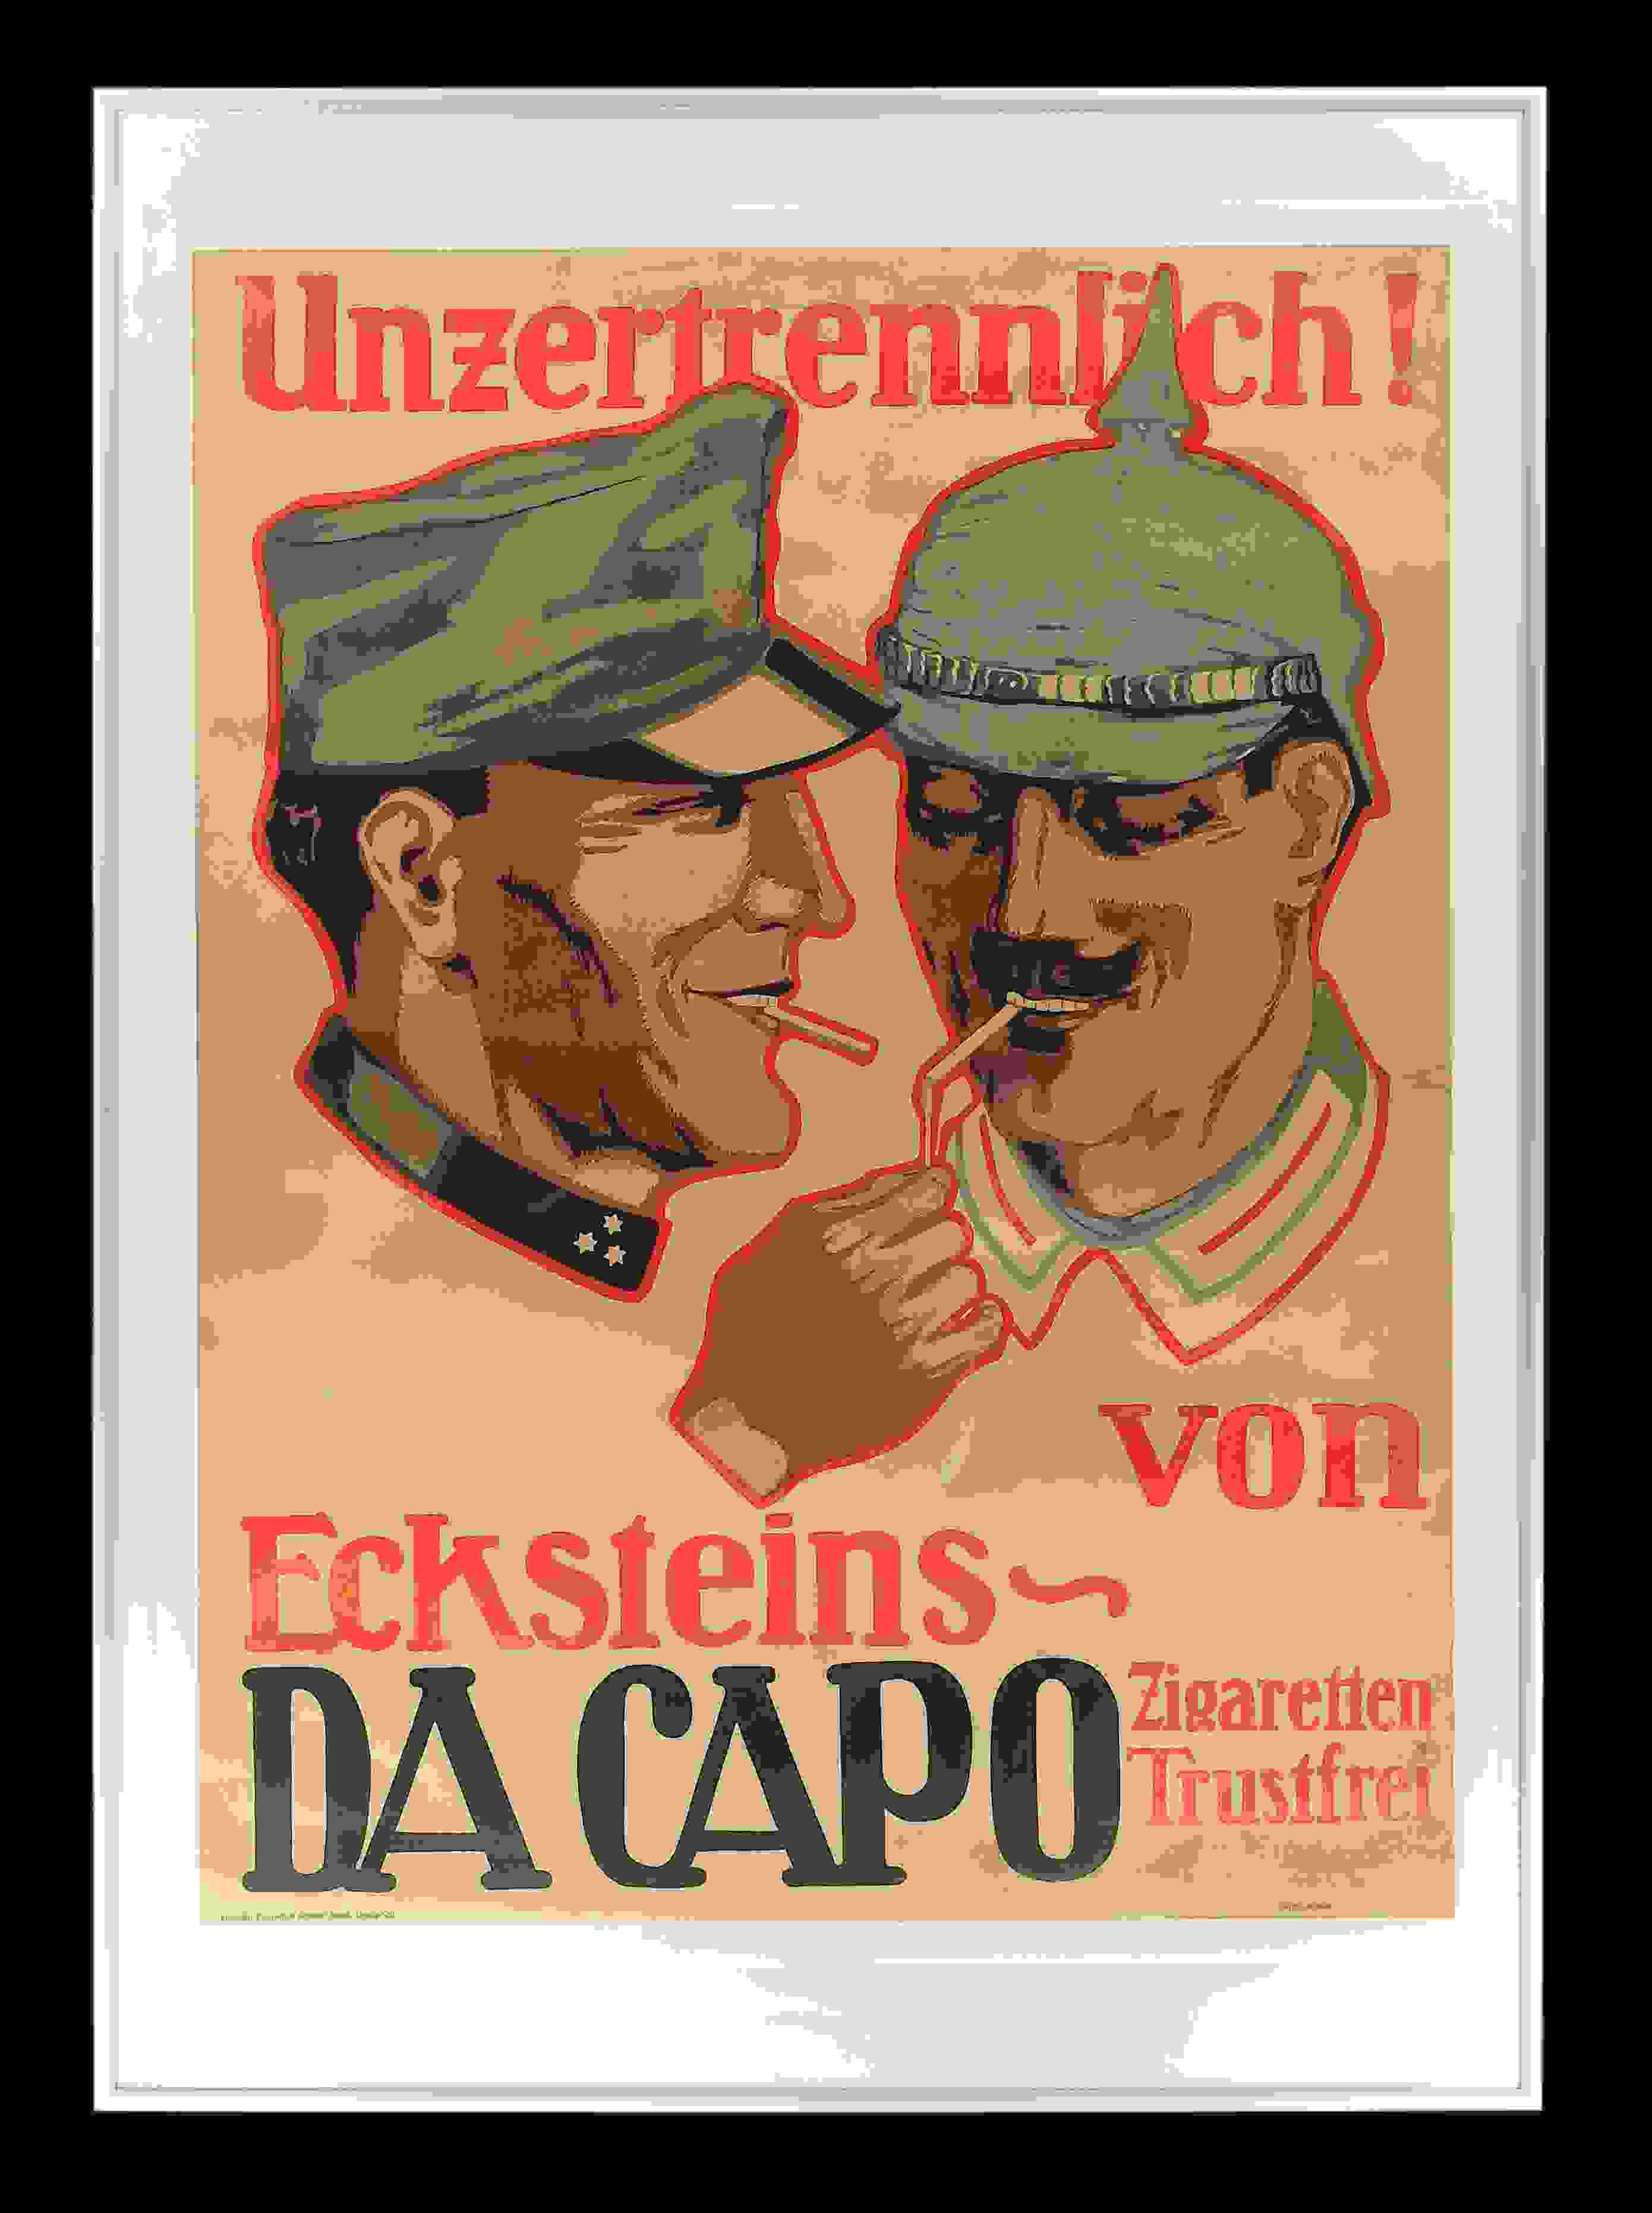 Eckstein's Da Capo Zigaretten "Unzertrennlich" 